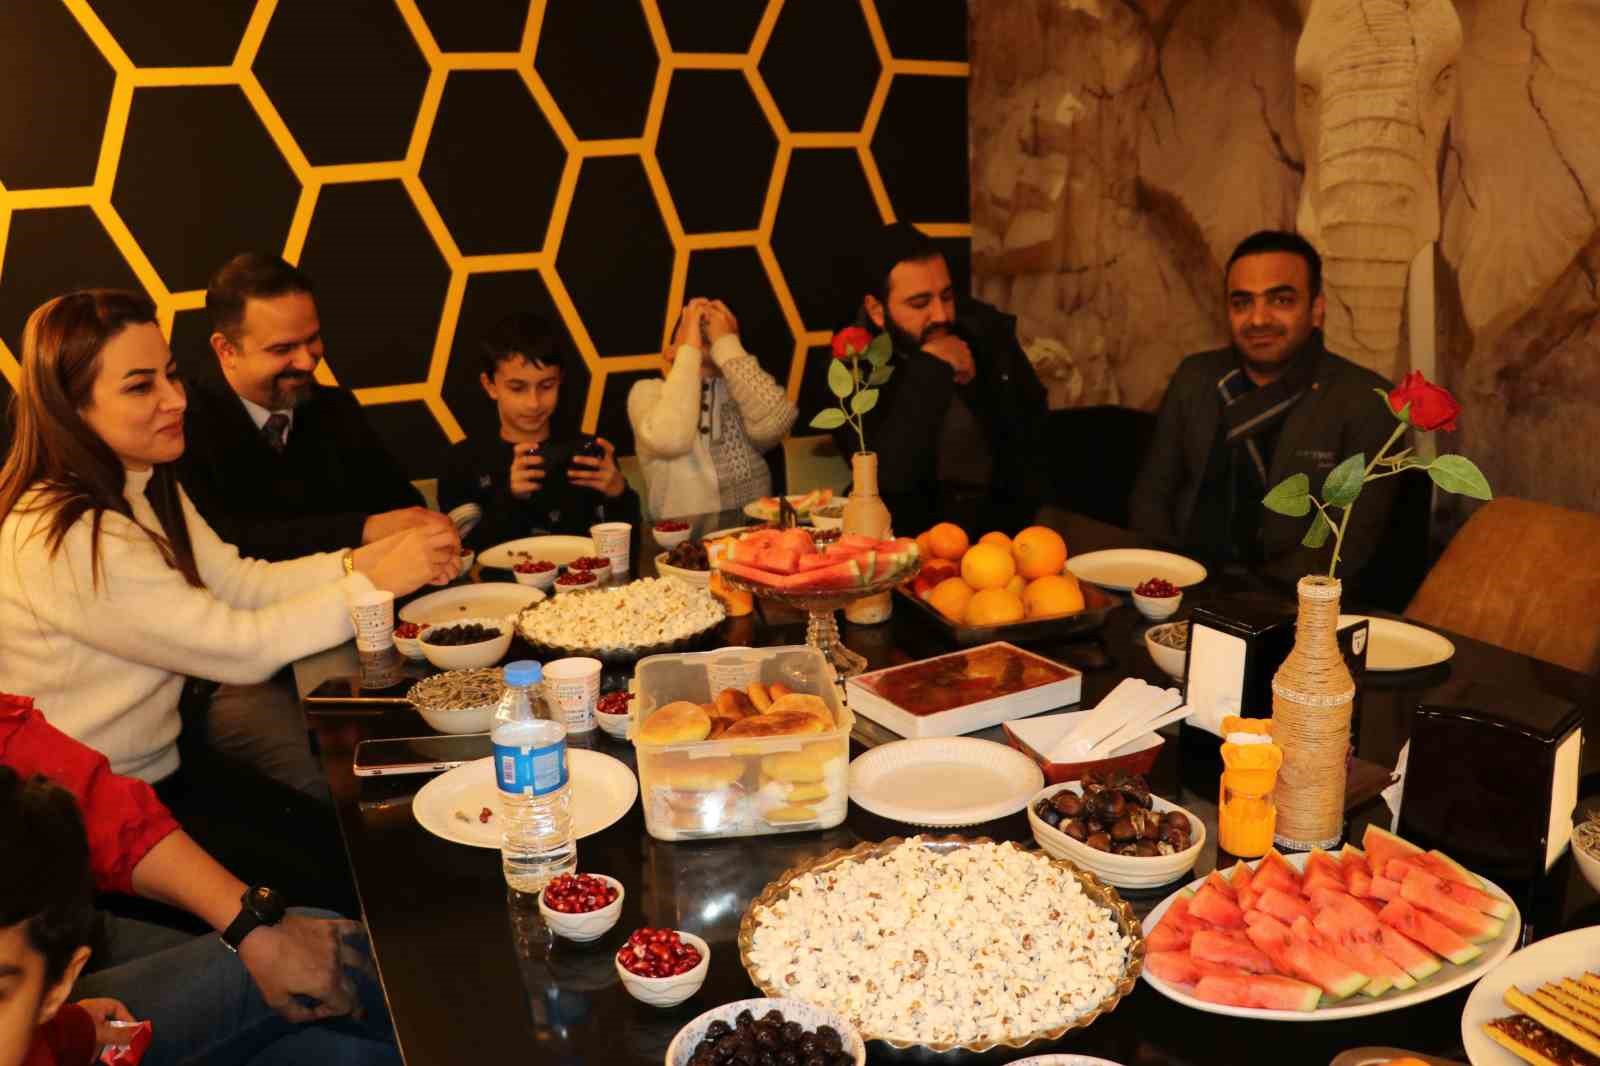 İranlılar 21 Aralık gecesini Van’da kutladı